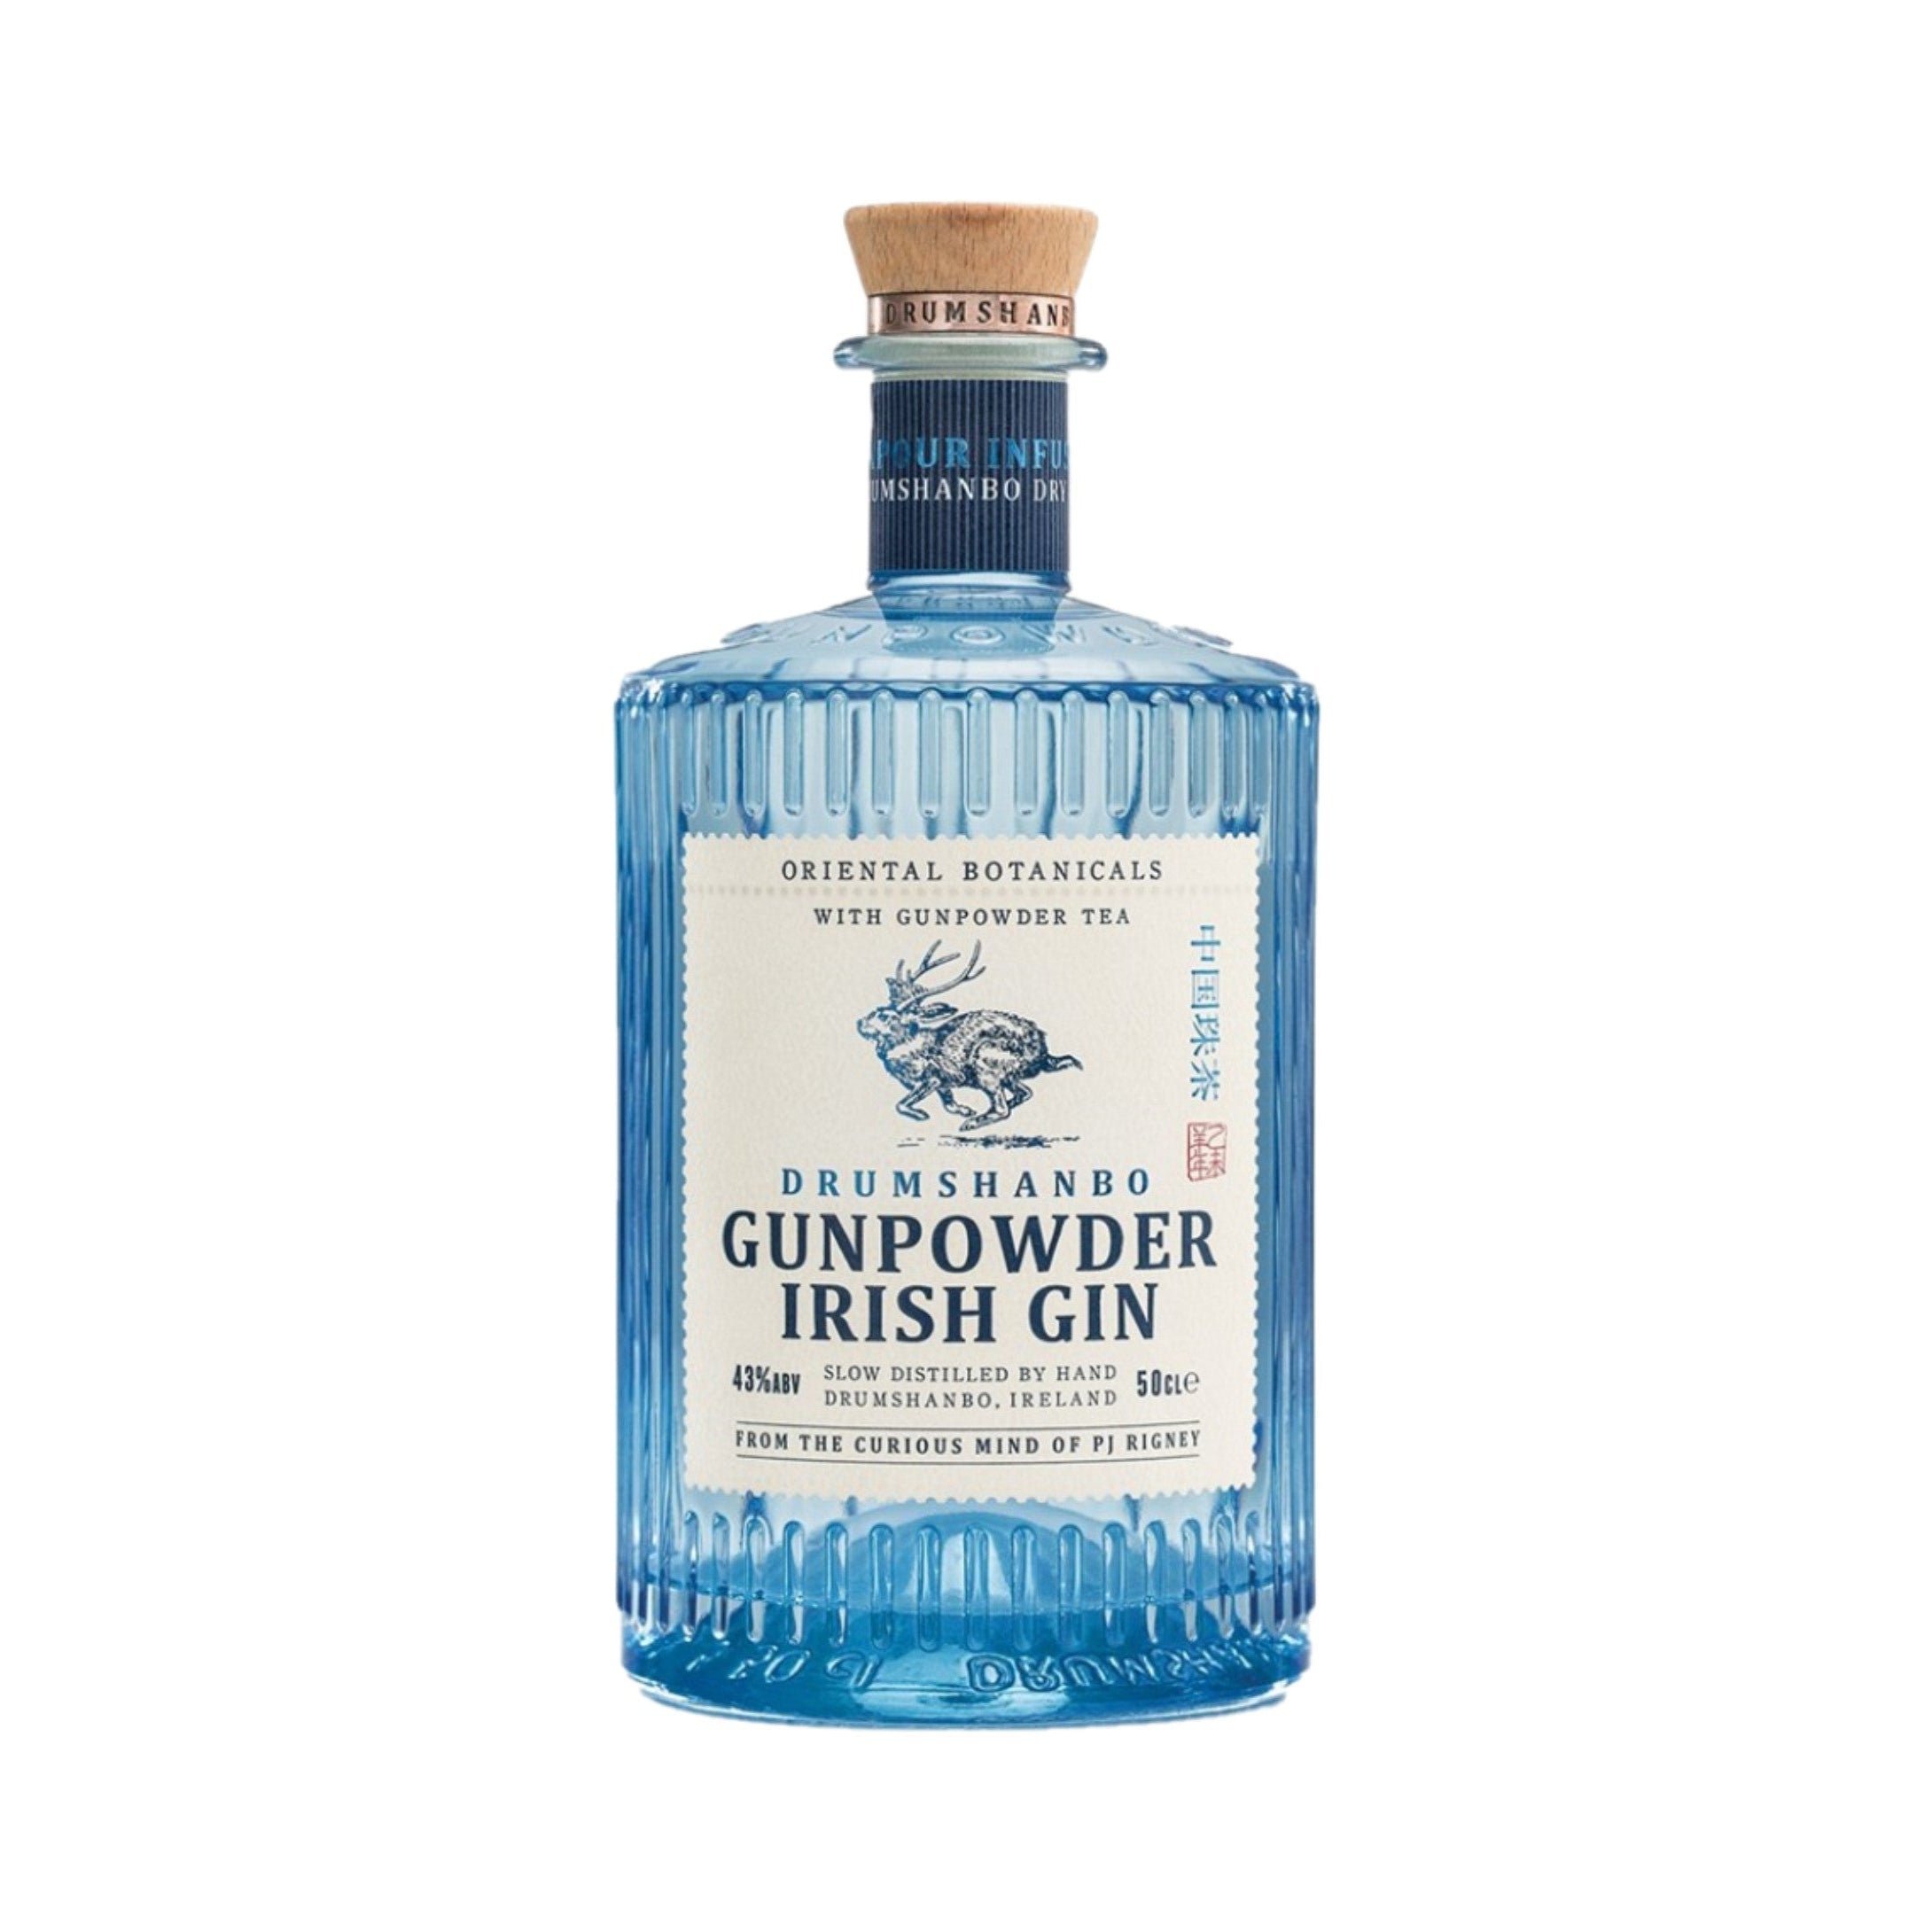 Drumshanbo Gunpowder Irish Gin 43% – Love Wine